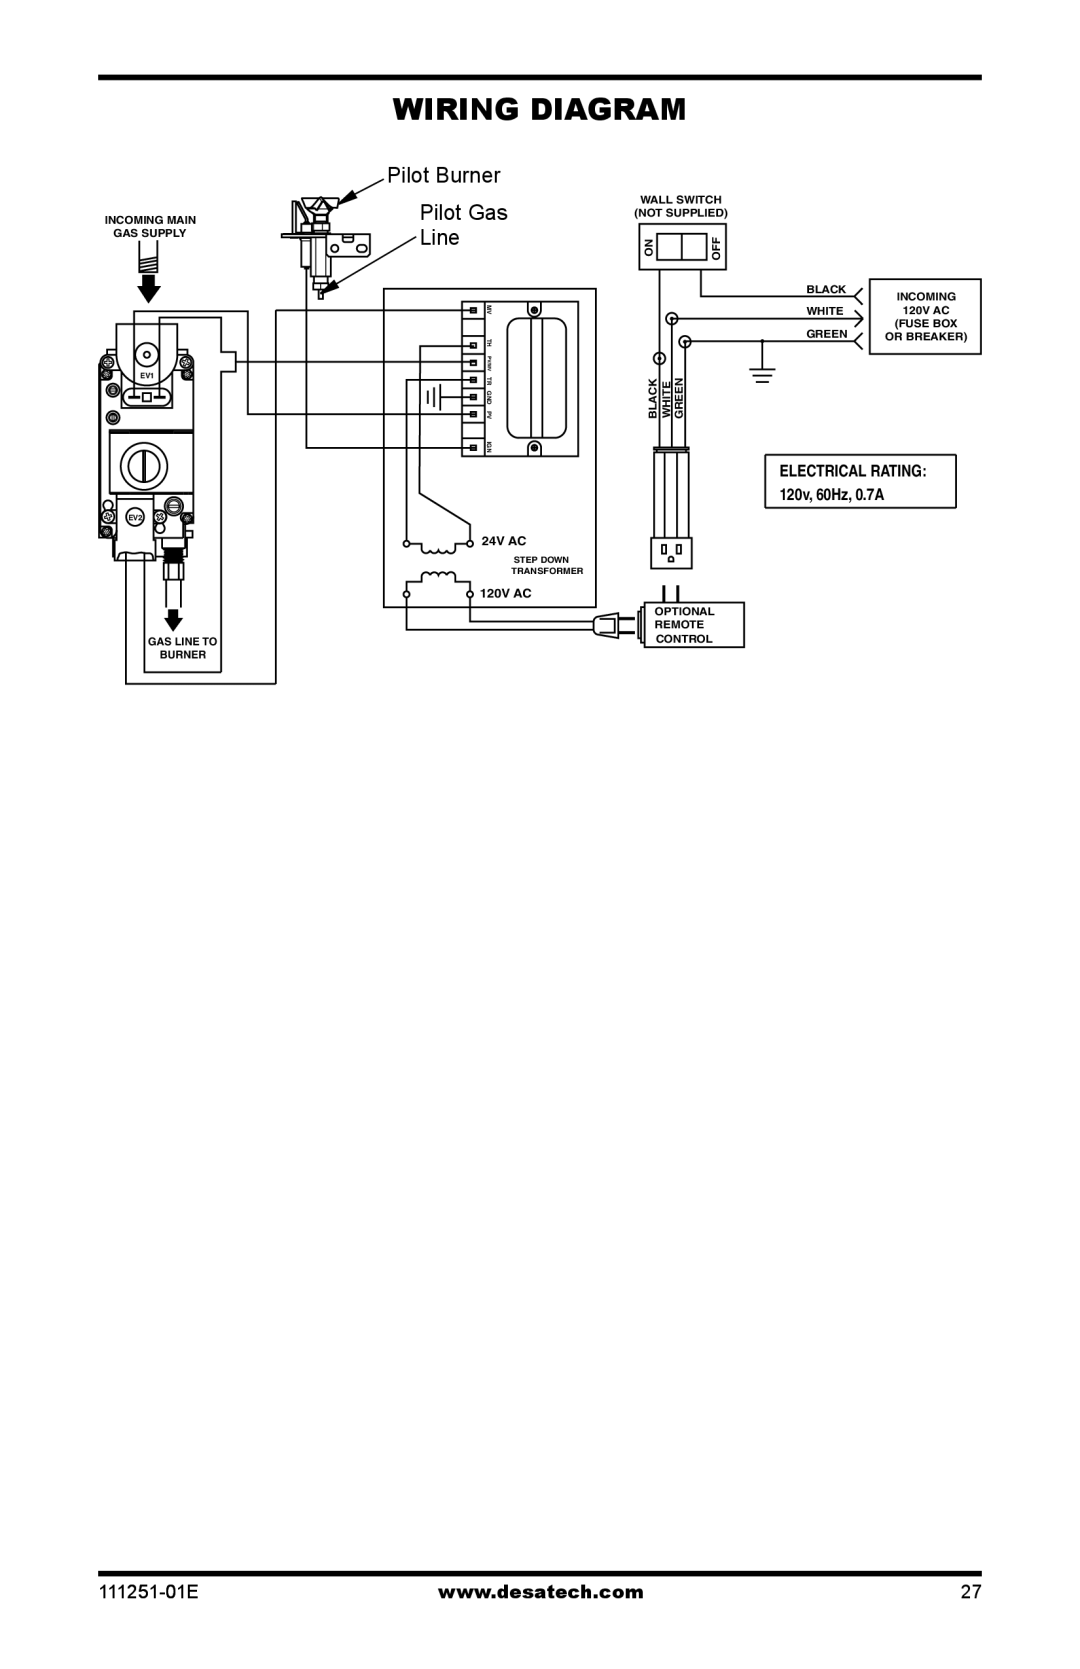 Desa (V)T36EPA installation manual Pilot Gas, Line, 111251-01E, ELECTRICAL RATING: 120v, 60Hz, 0.7A, 24V AC, 120V AC 